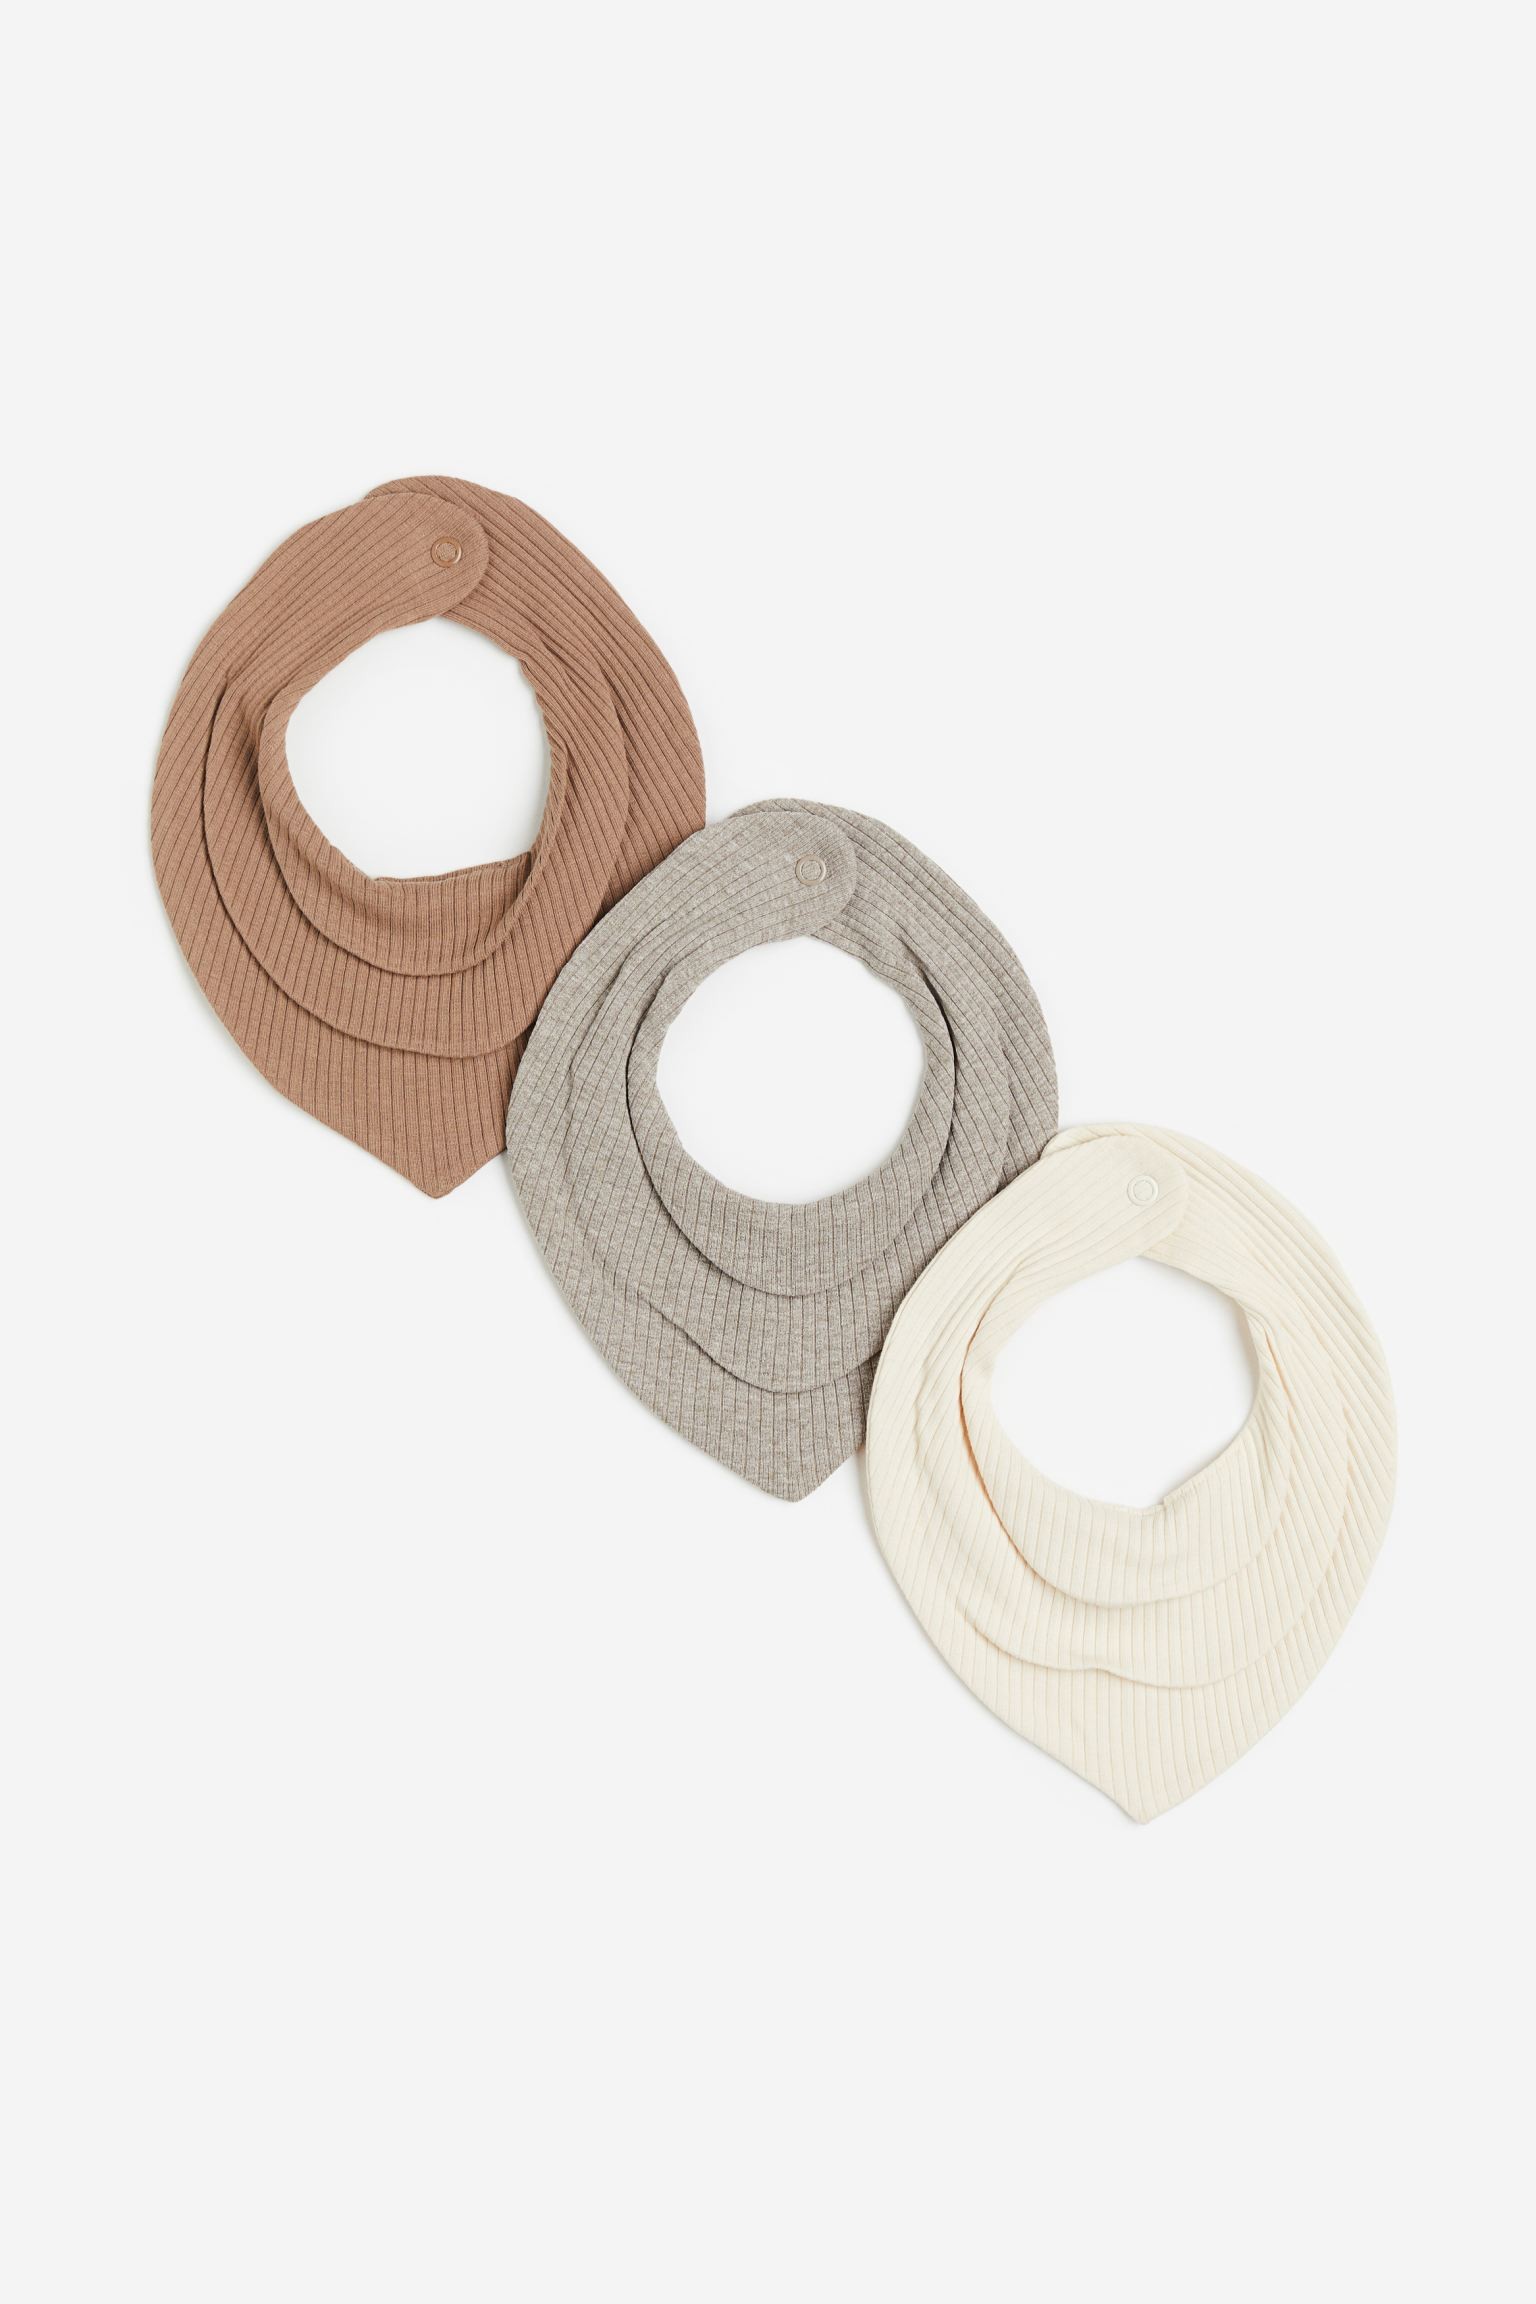 Трикутний шарф у смужки, 3 шт., Натуральний білий/Сірий, 19x19